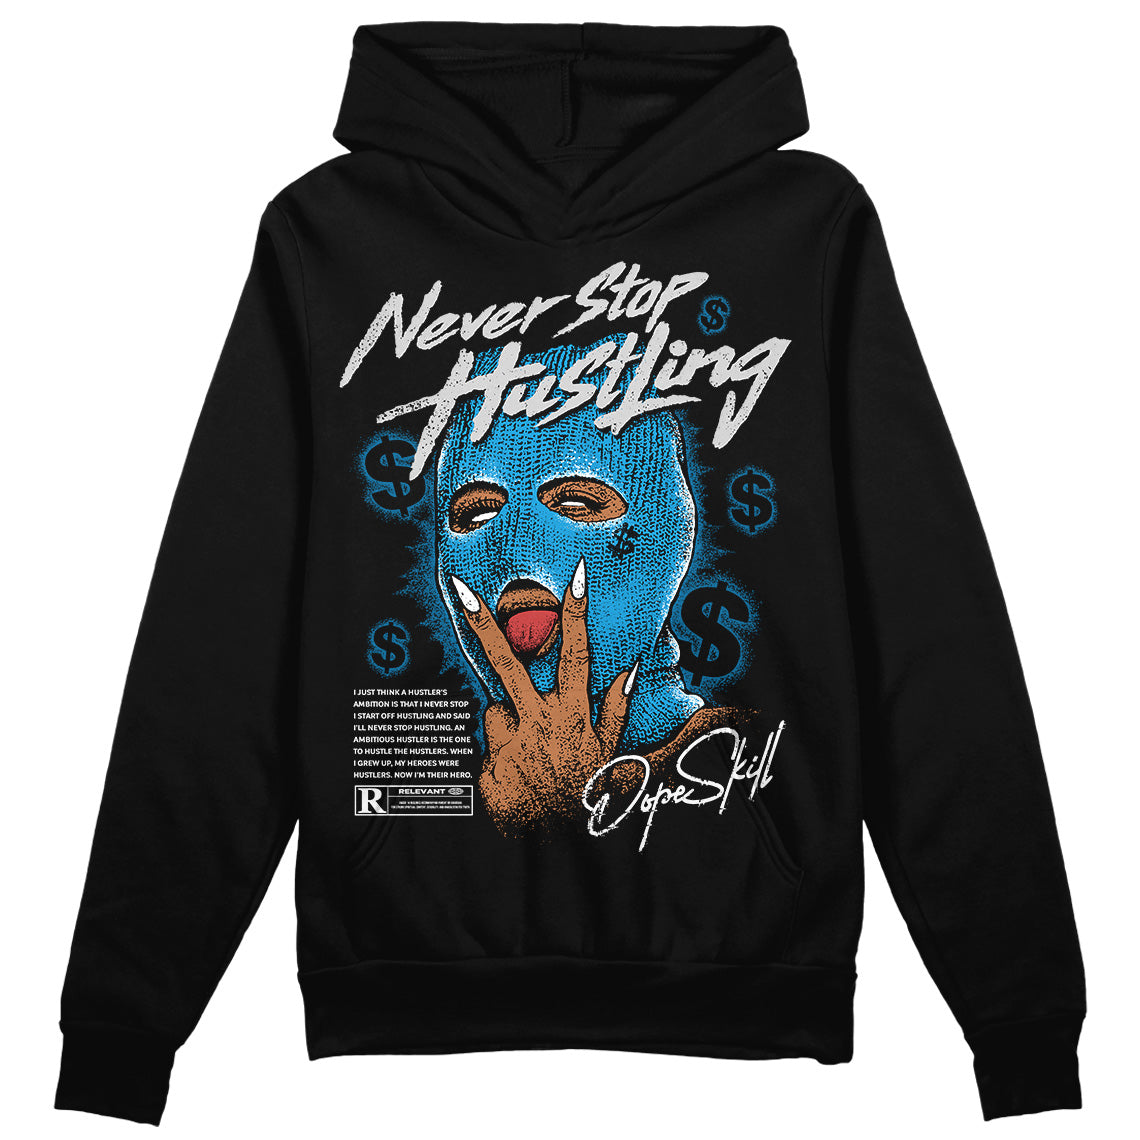 Jordan 4 Retro Military Blue DopeSkill Hoodie Sweatshirt Never Stop Hustling Graphic Streetwear - Black